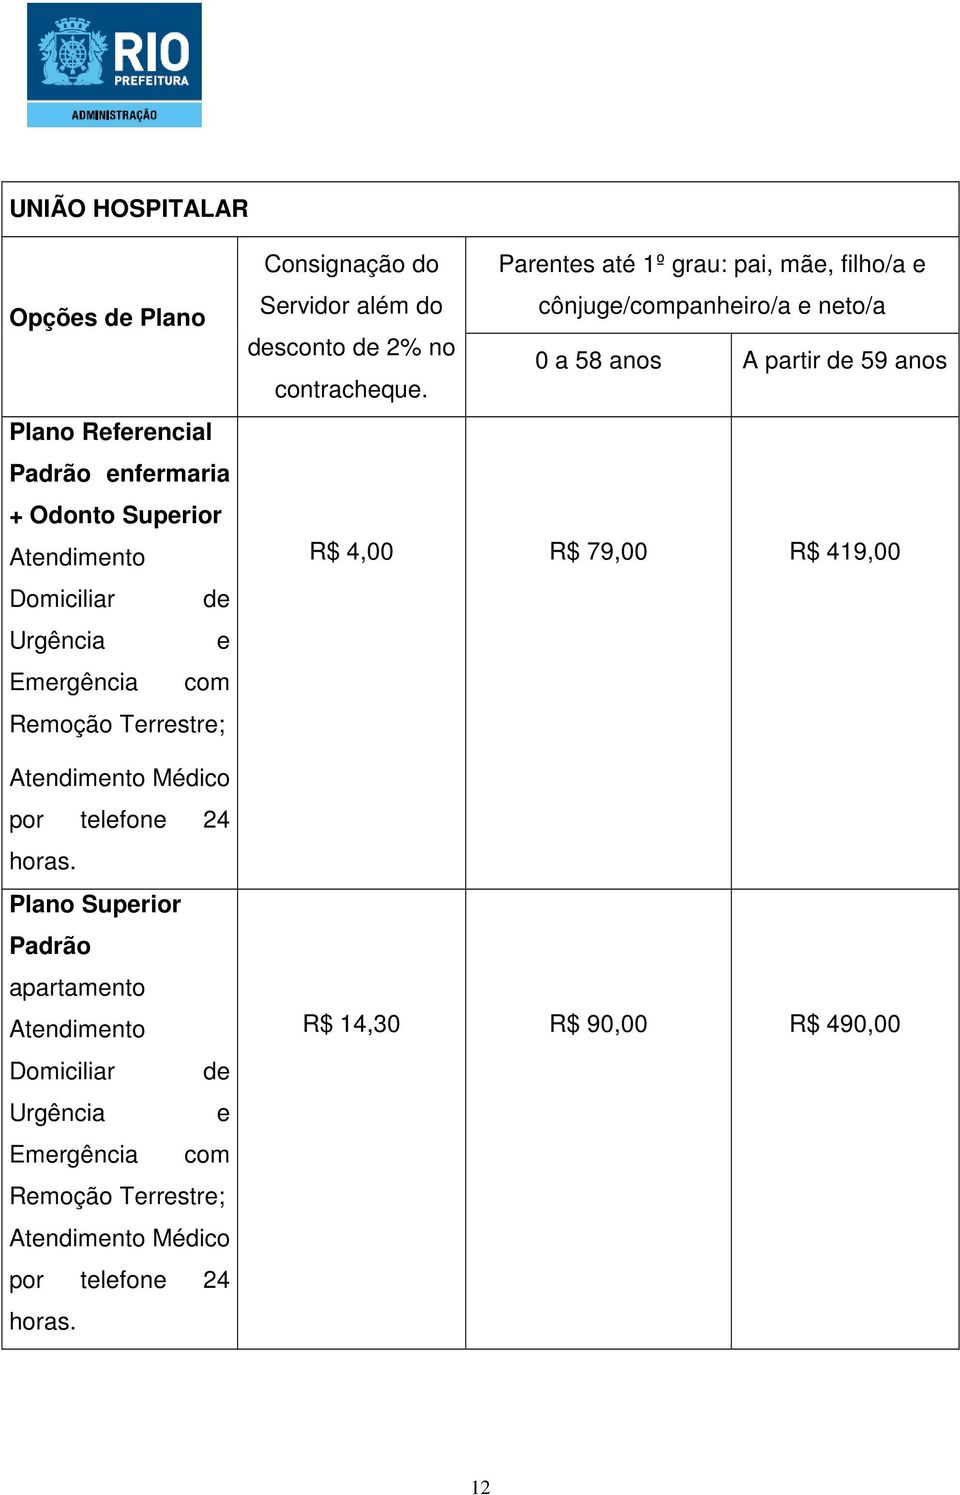 Plano Superior Padrão apartamento Atendimento Domiciliar de  R$ 4,00 R$ 79,00 R$ 419,00 R$ 14,30